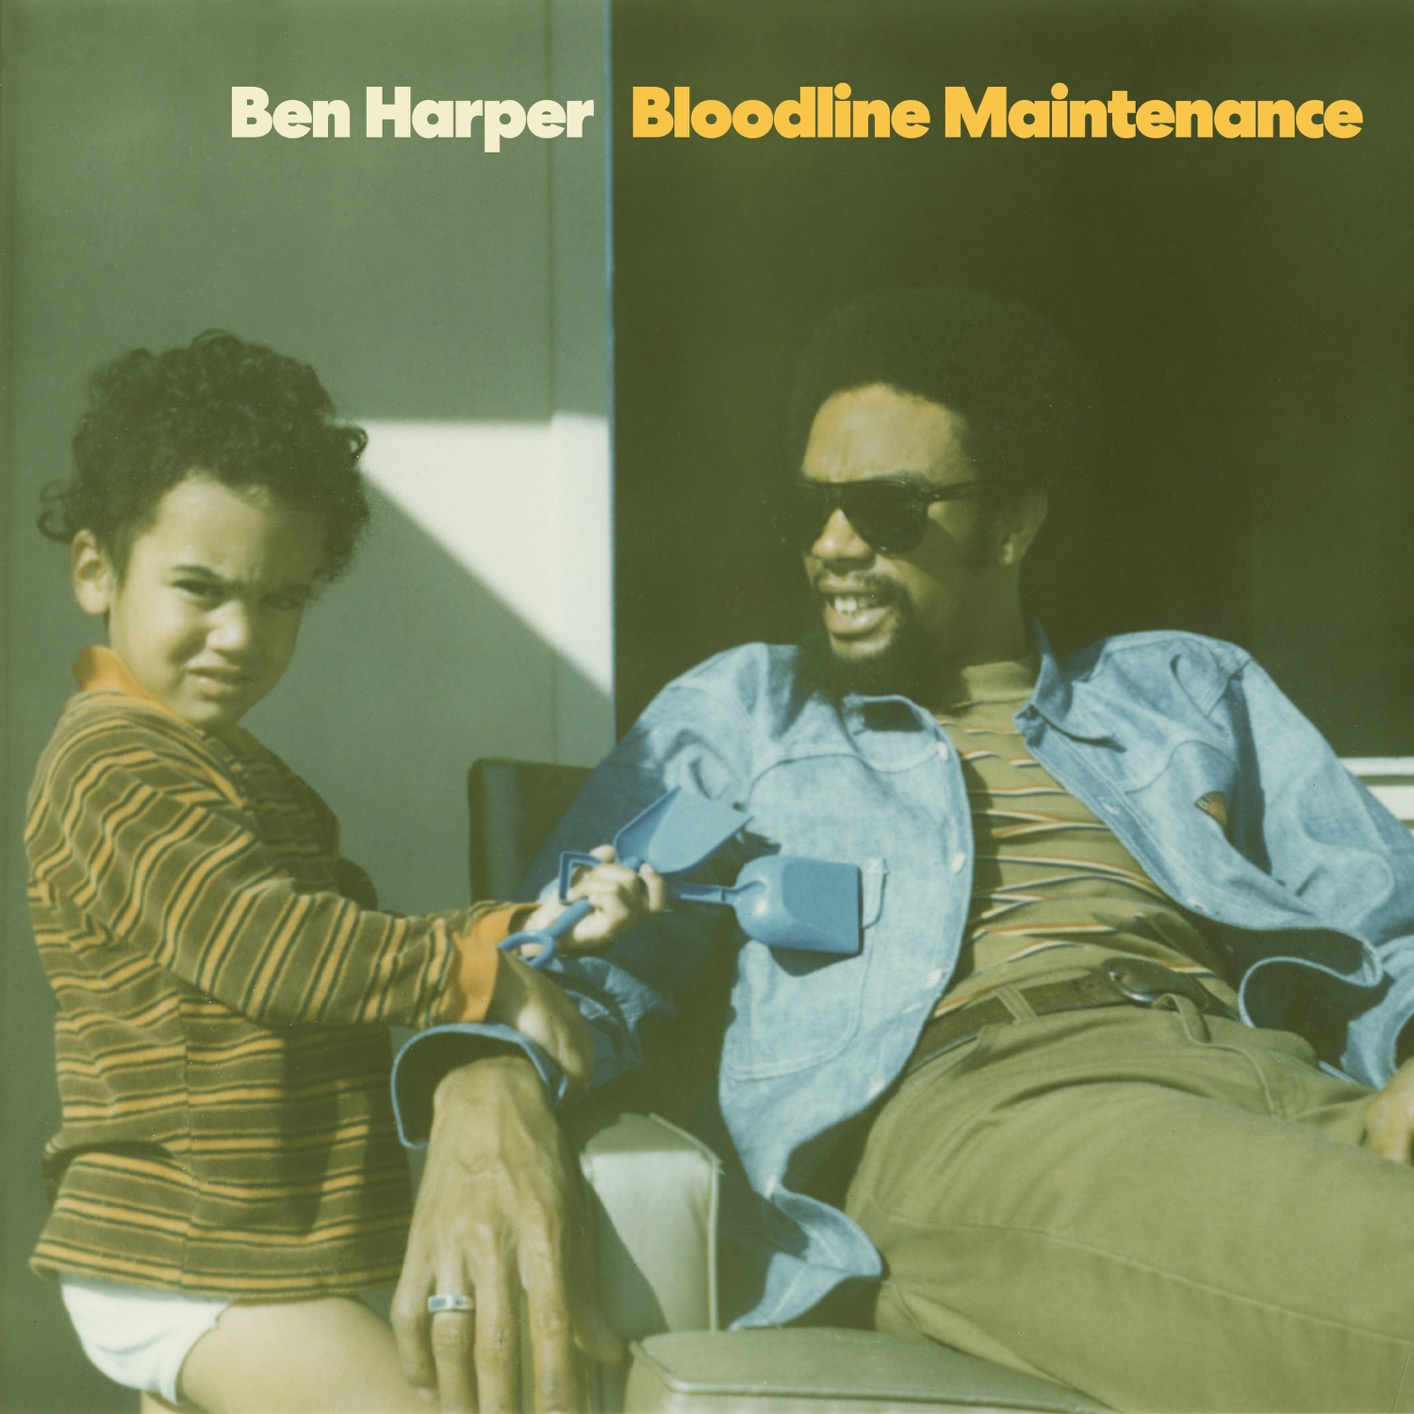 Ben Harper - 2022 - Bloodline Maintenance (24-88.2)